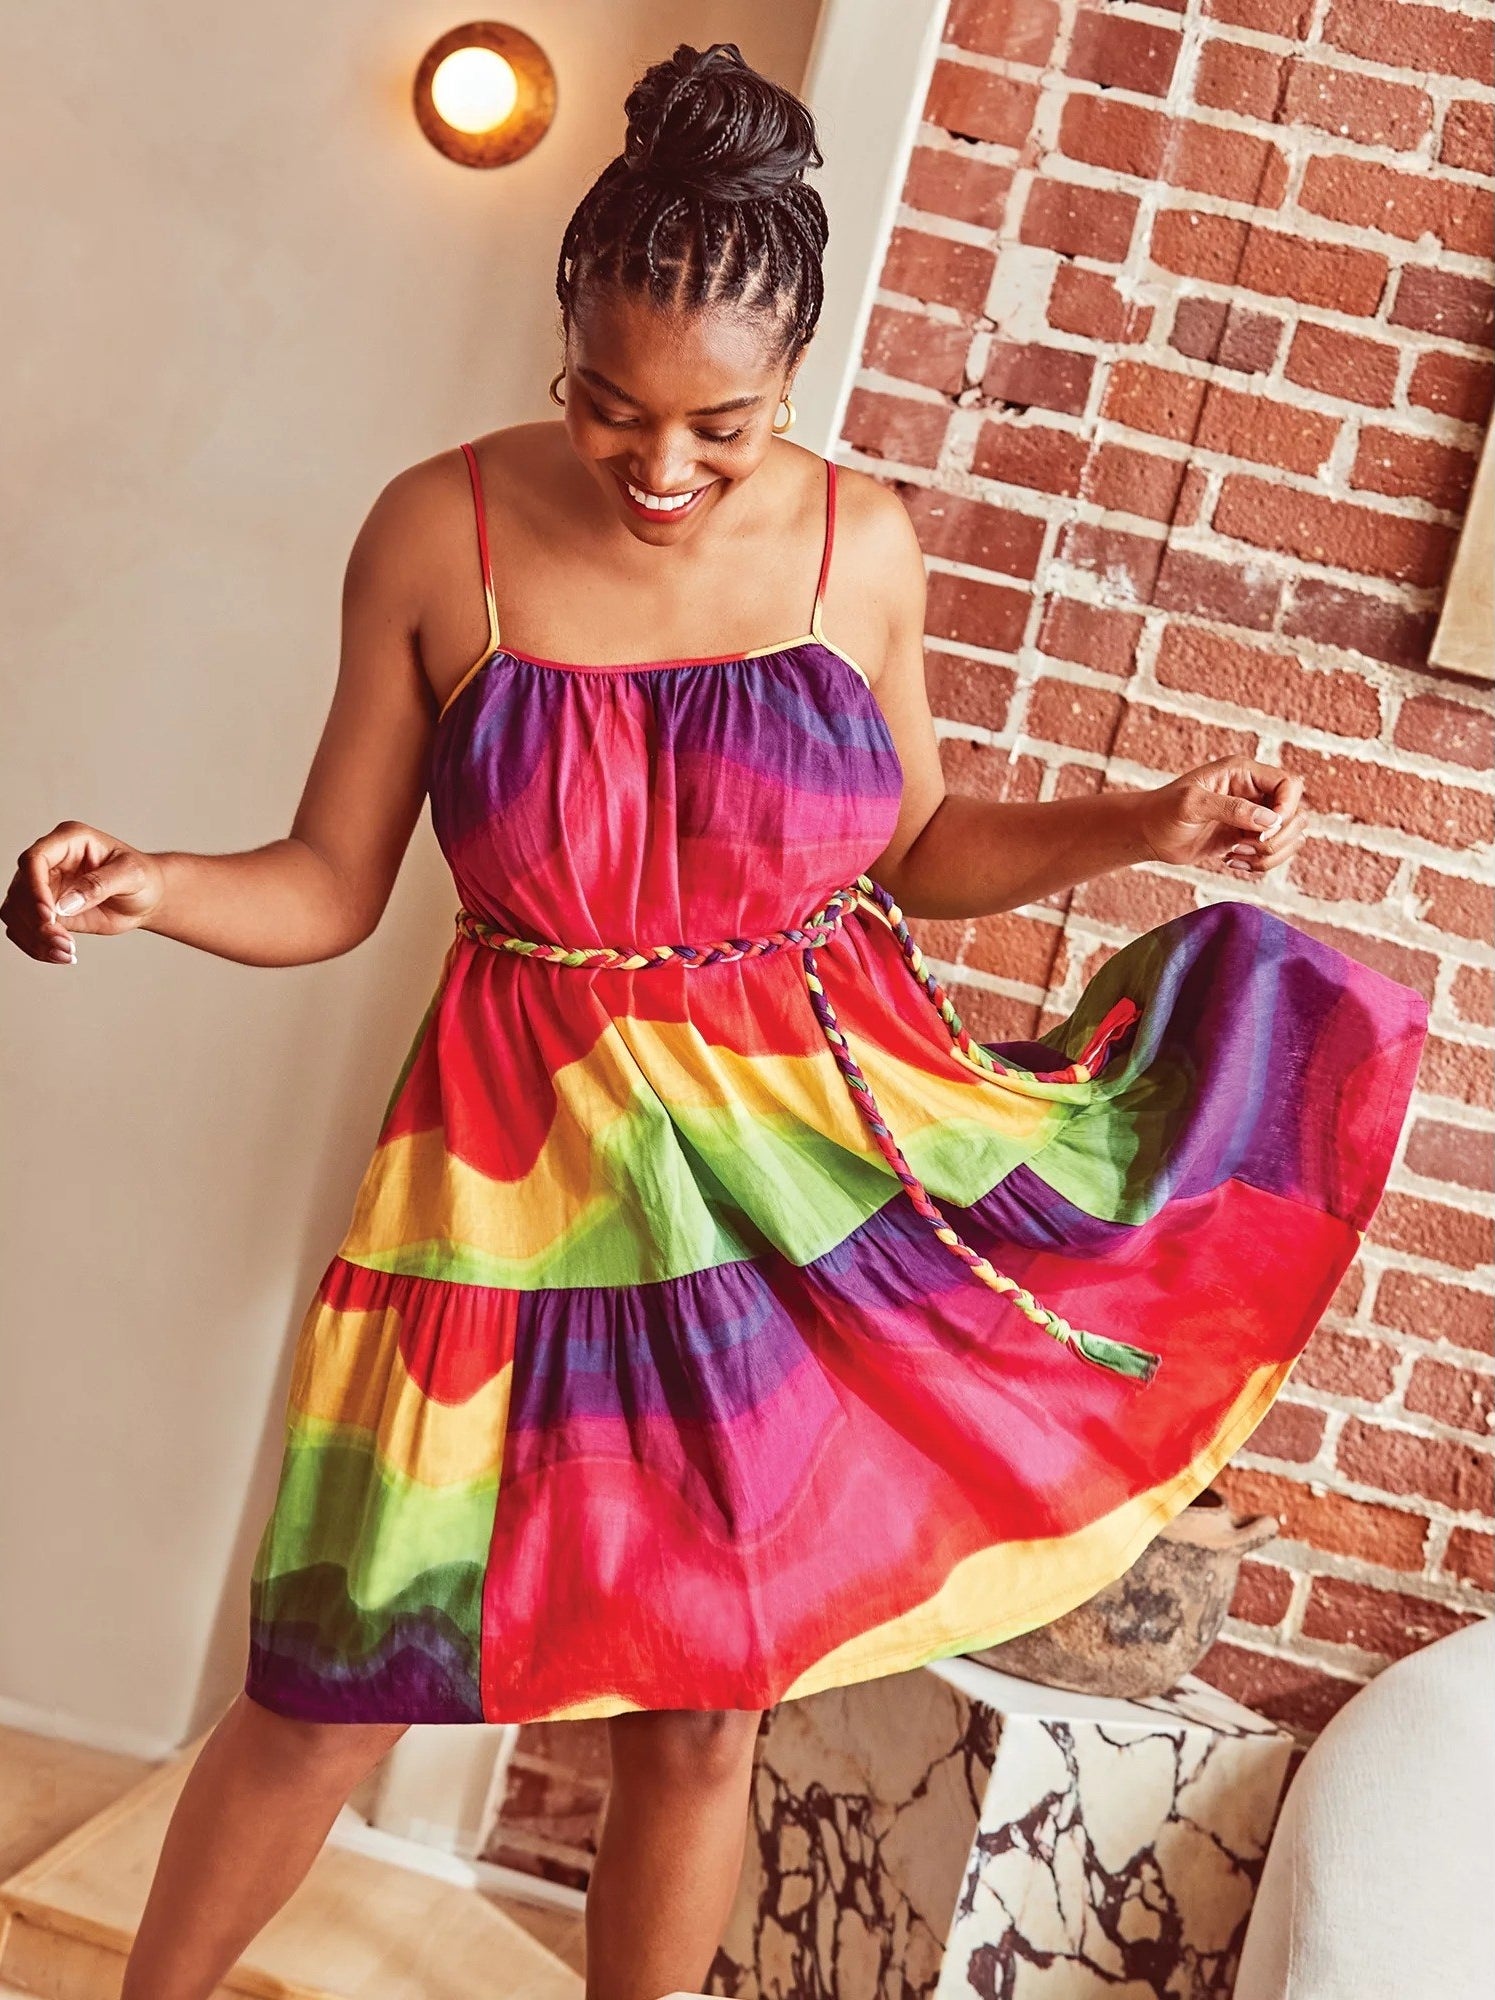 Model wears a colorful dress